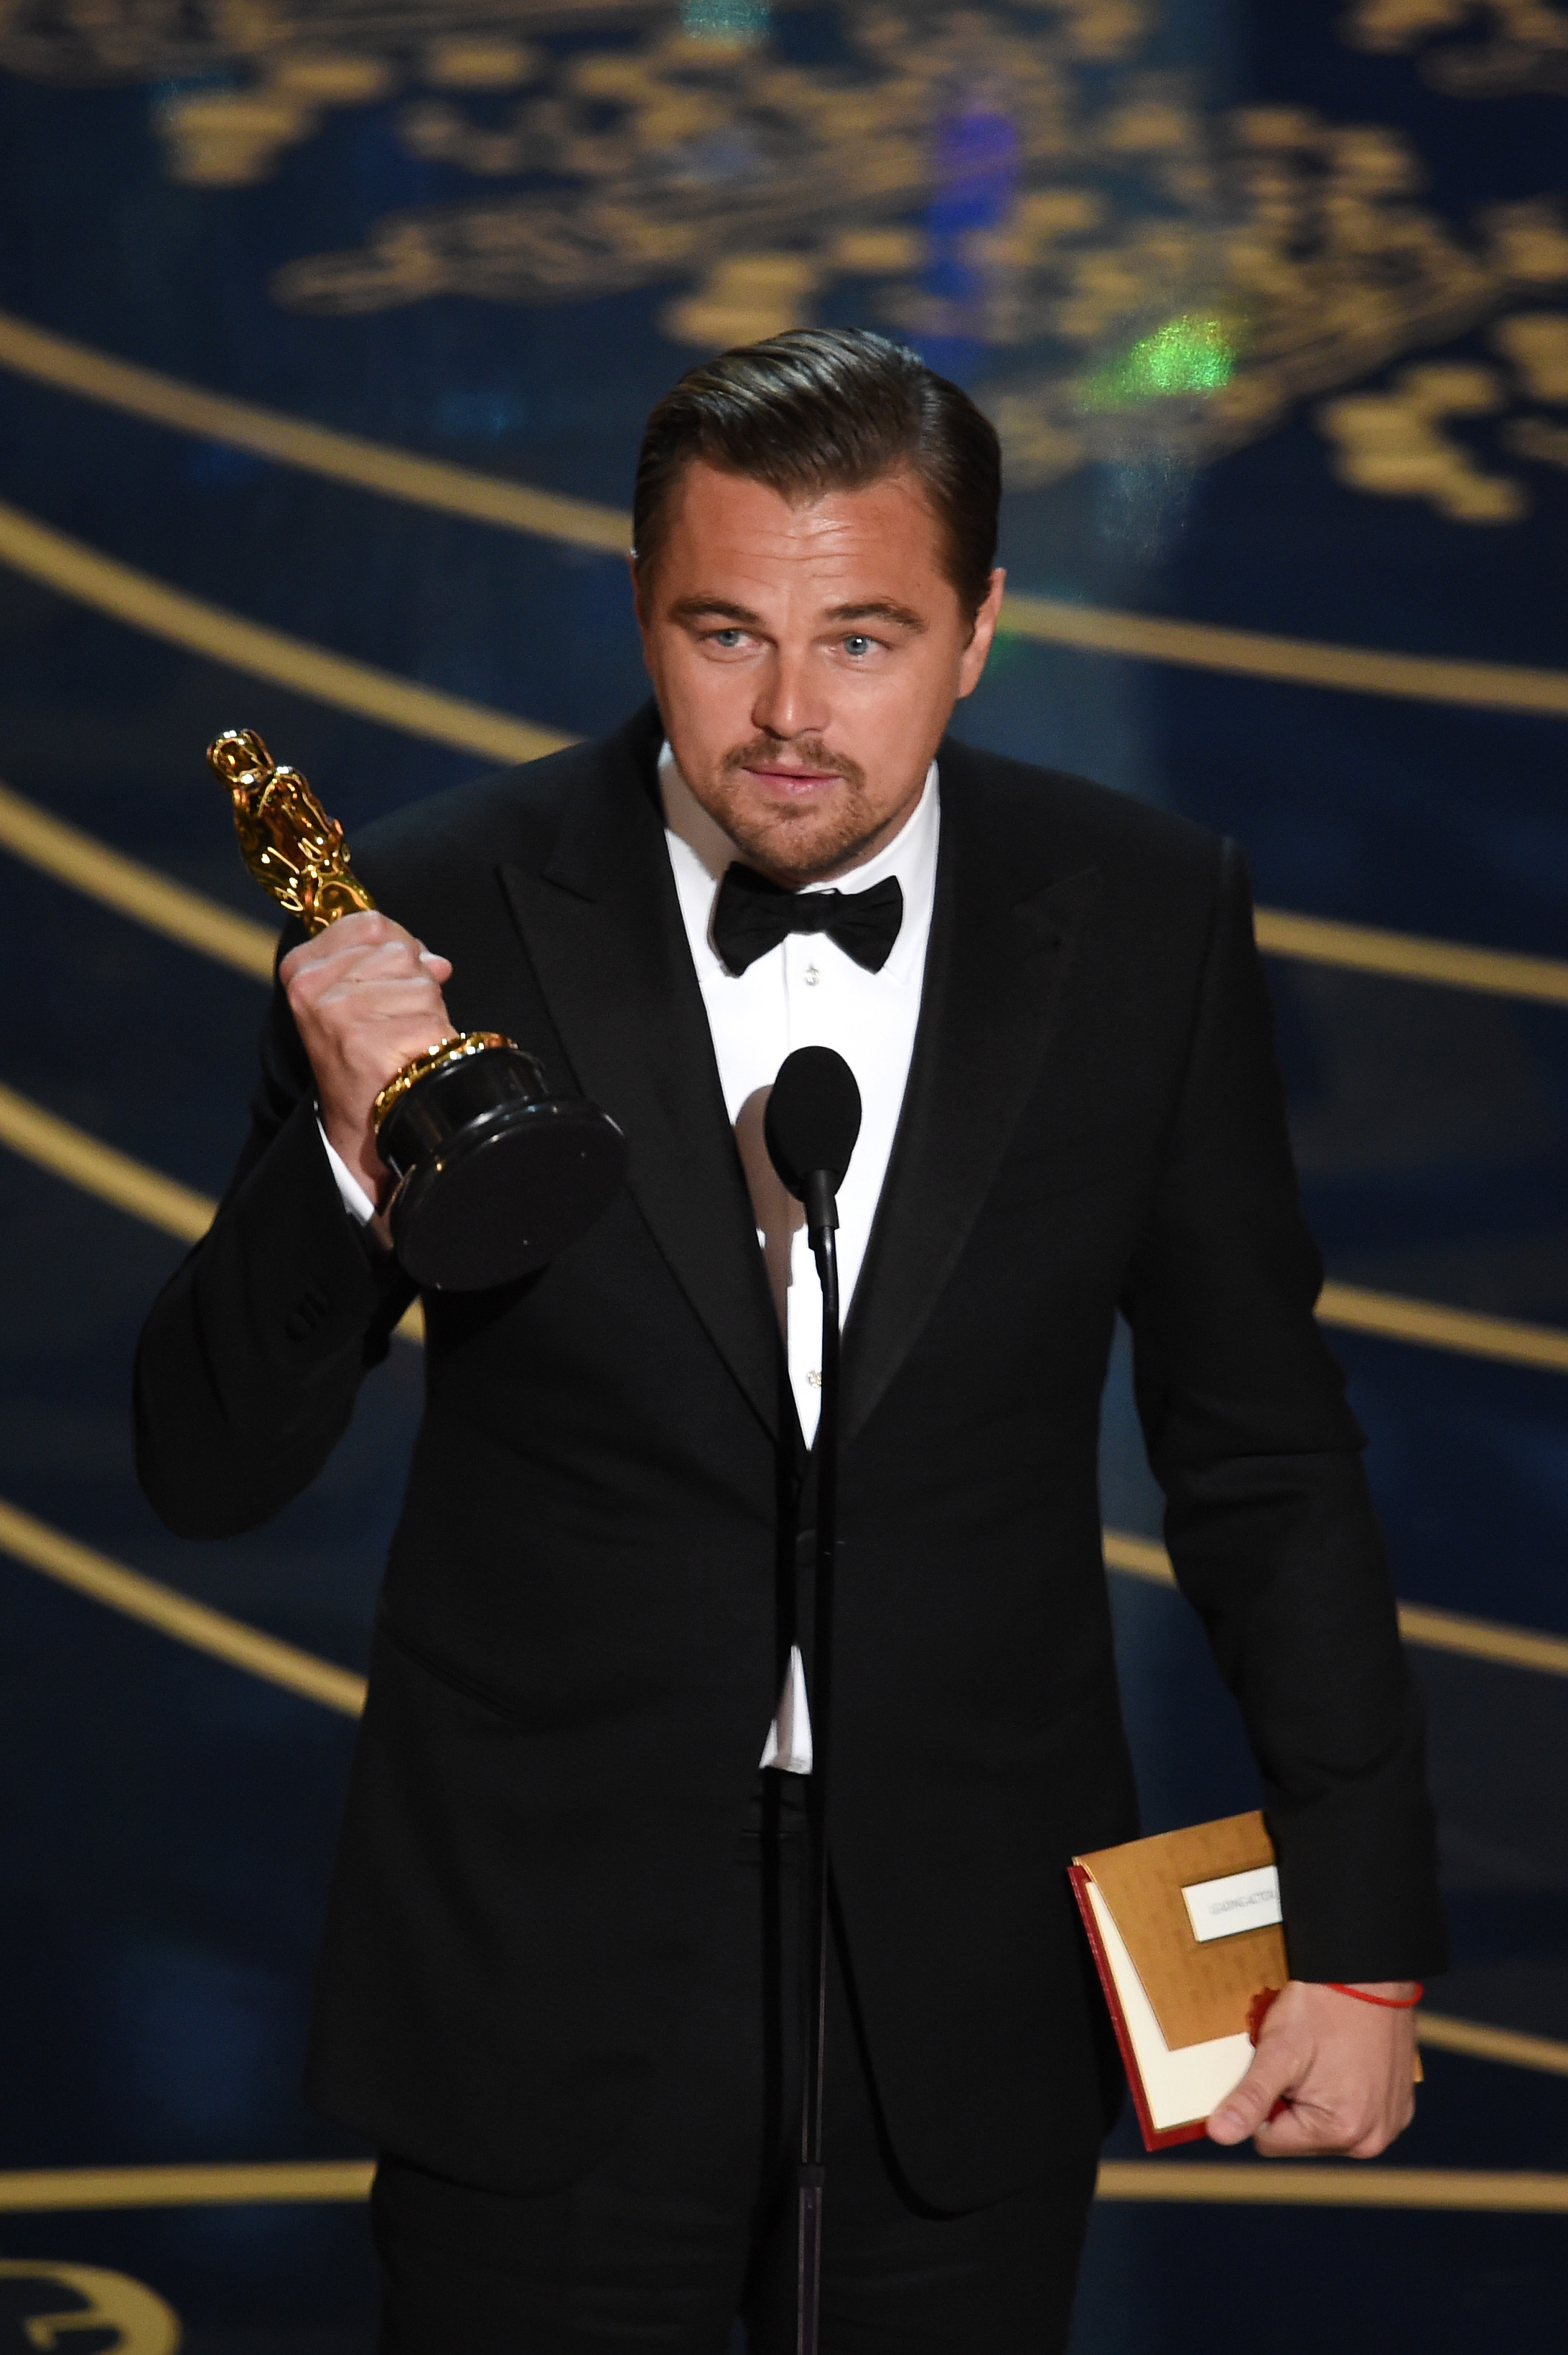 Leo erhielt 2015 den Preis für die beste Hauptdarstellerrolle für „The Revenant“.